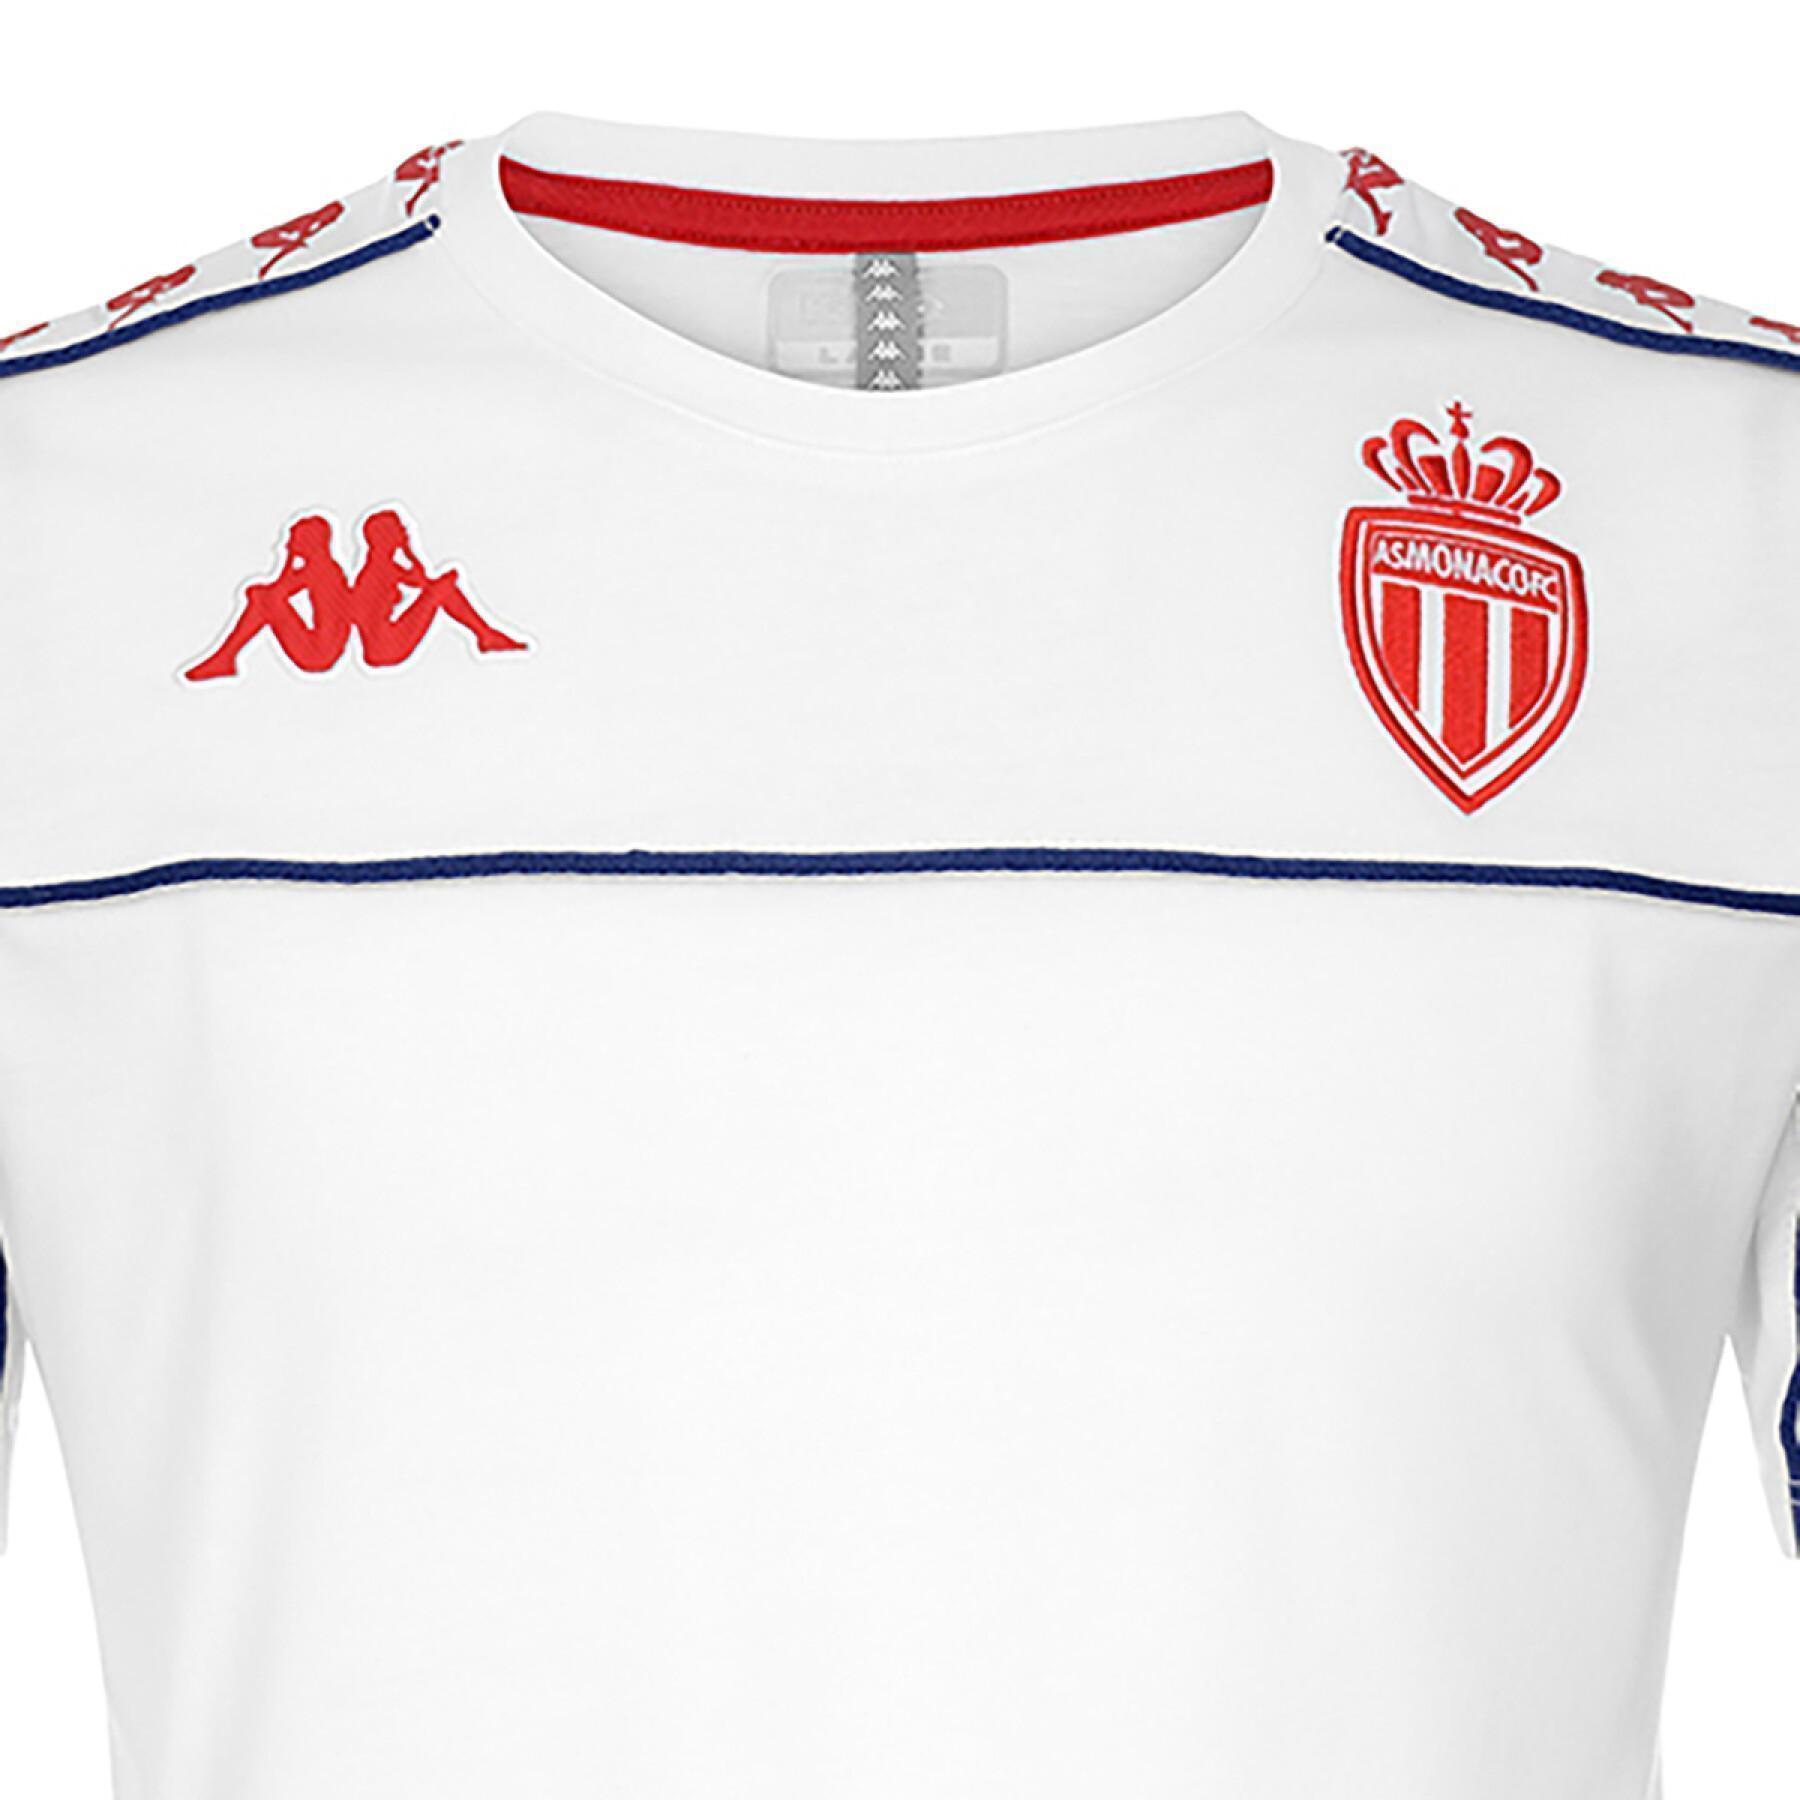 T-shirt enfant AS Monaco 2021/22 222 banda arari slim